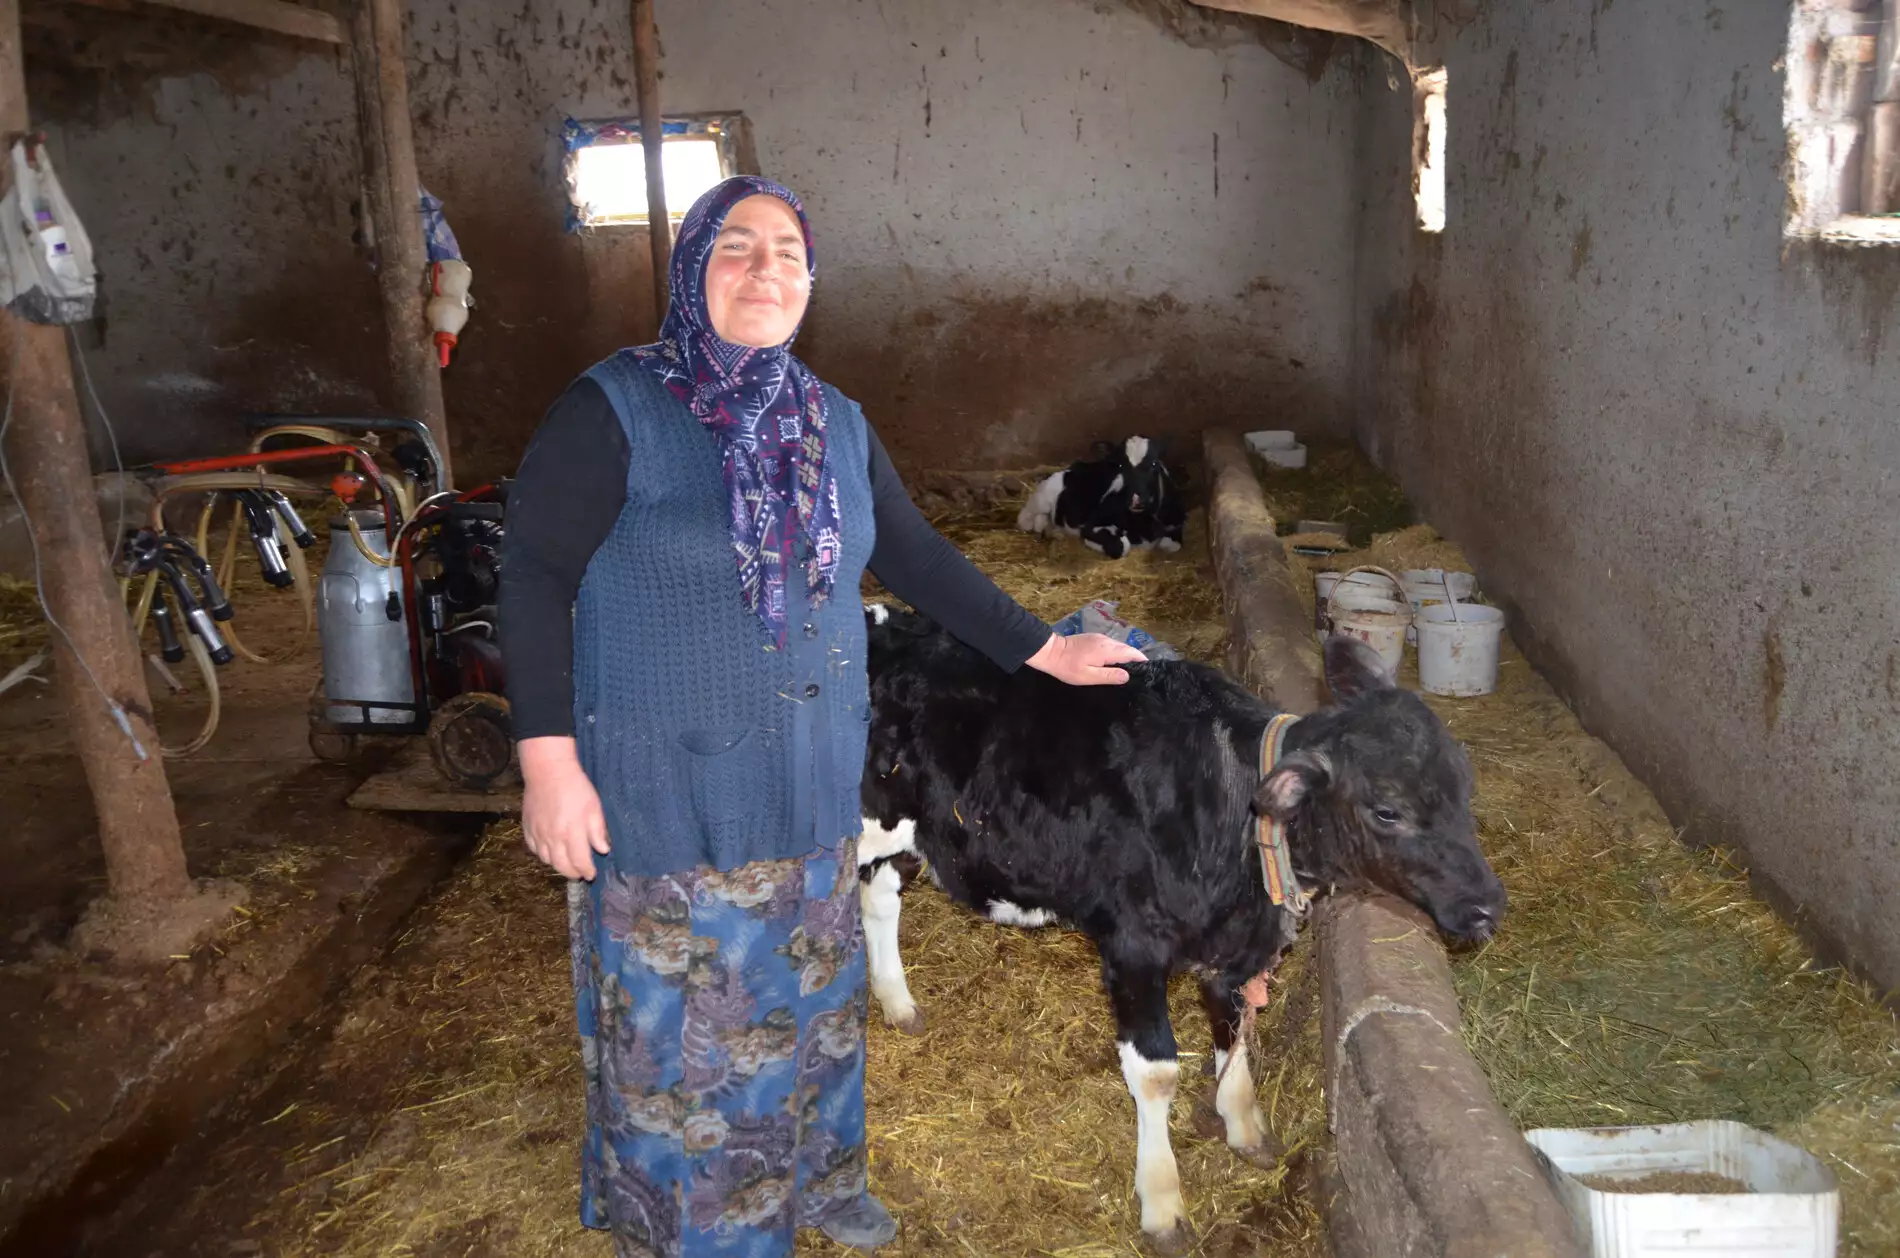 Aksaray'da 2 çocuk annesi hatice gökçe (51), 1 düve ile hayvancılığı başladı 11 yılda çiftlik kurdu geçen zaman içerisinde hayvan sayısını 12 ineğe yükseltti.